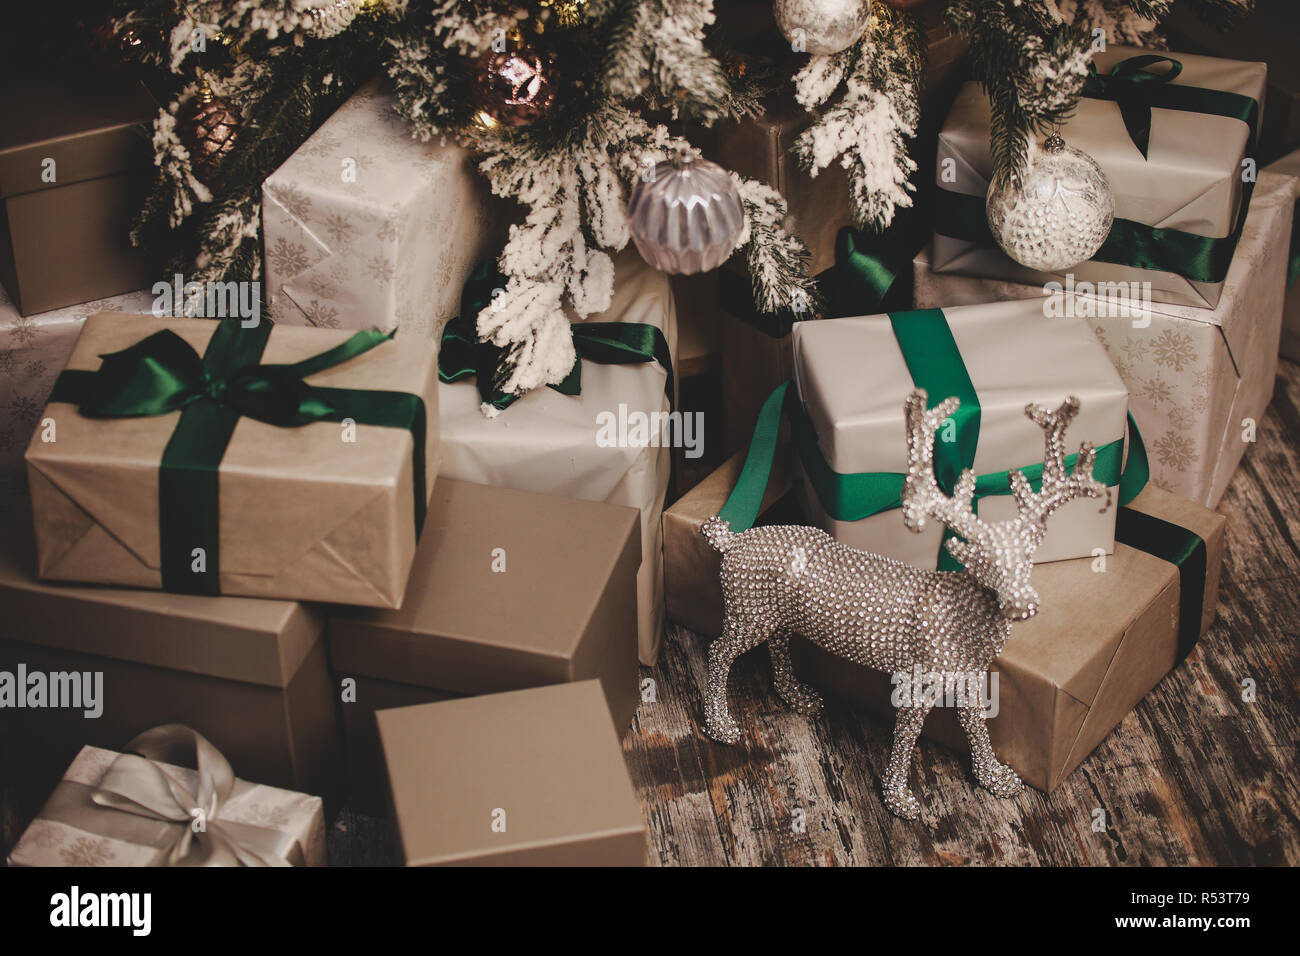 beautiful christmas decorations Stock Photo - Alamy